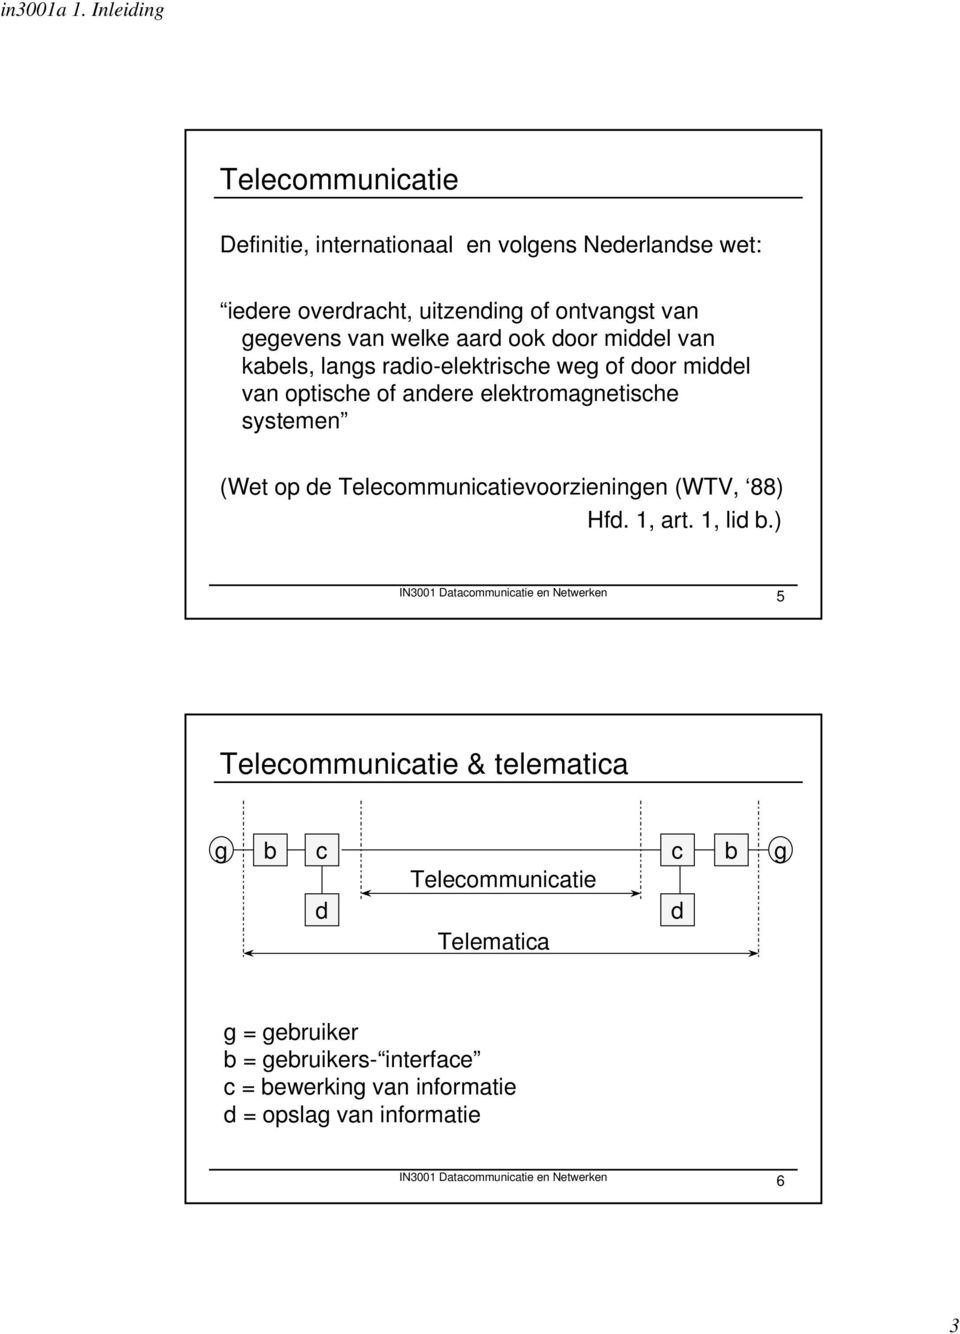 Telecommunicatievoorzieningen (WTV, 88) Hfd. 1, art. 1, lid b.